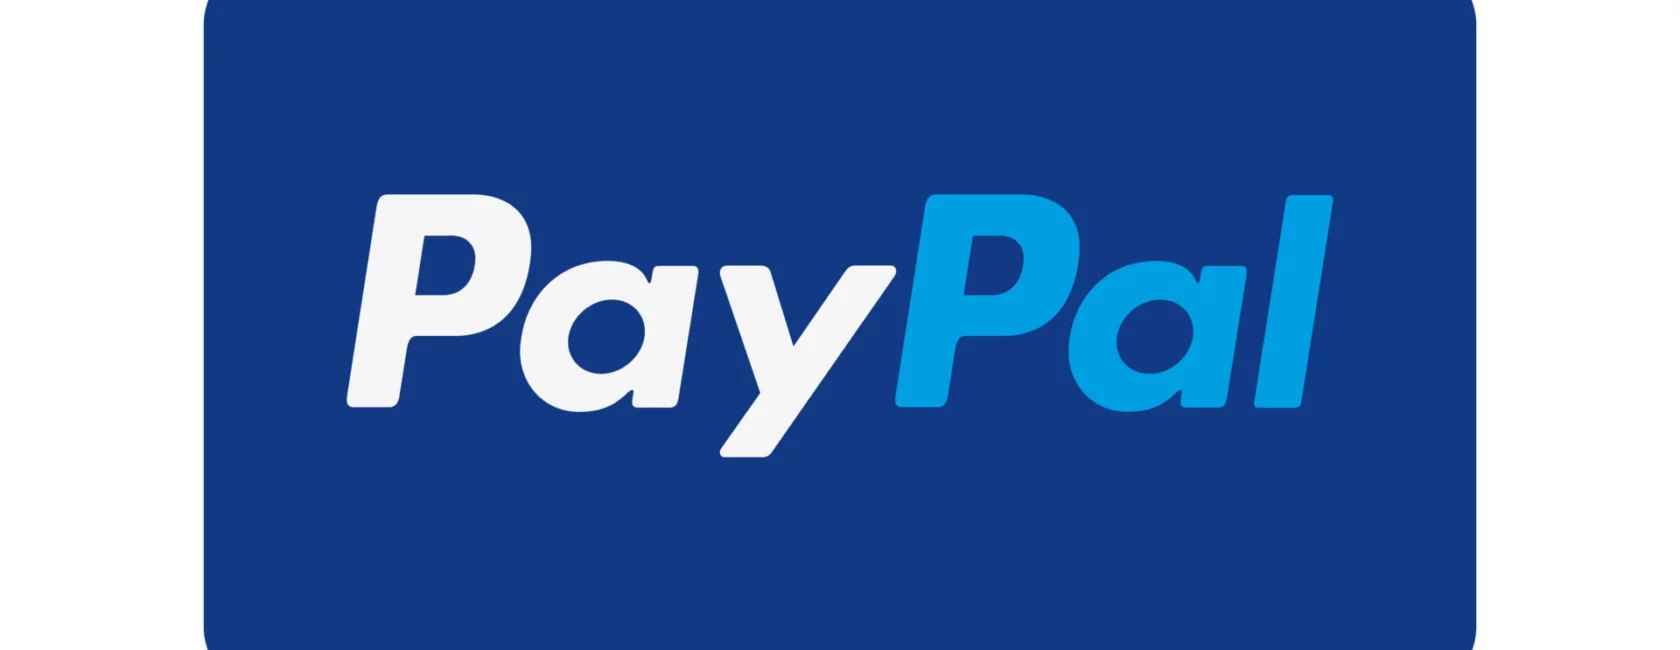 Paypal im Verdacht: Bundeskartellamt eröffnet Untersuchung